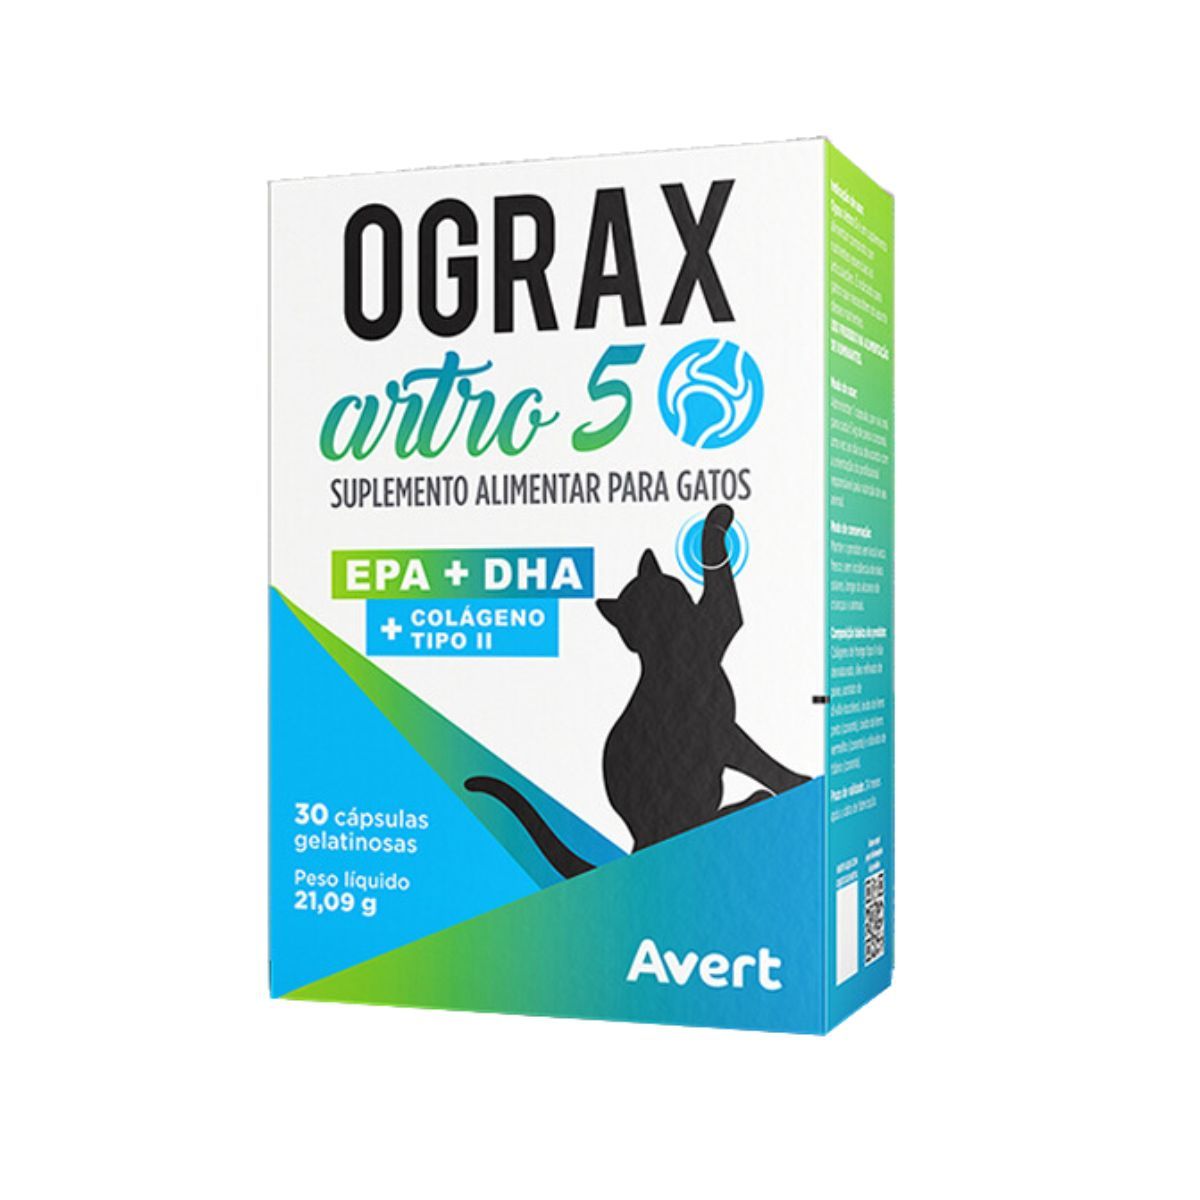 Suplemento Alimentar para Gatos Ograx Artro 5  (30 cápsulas) - Avert